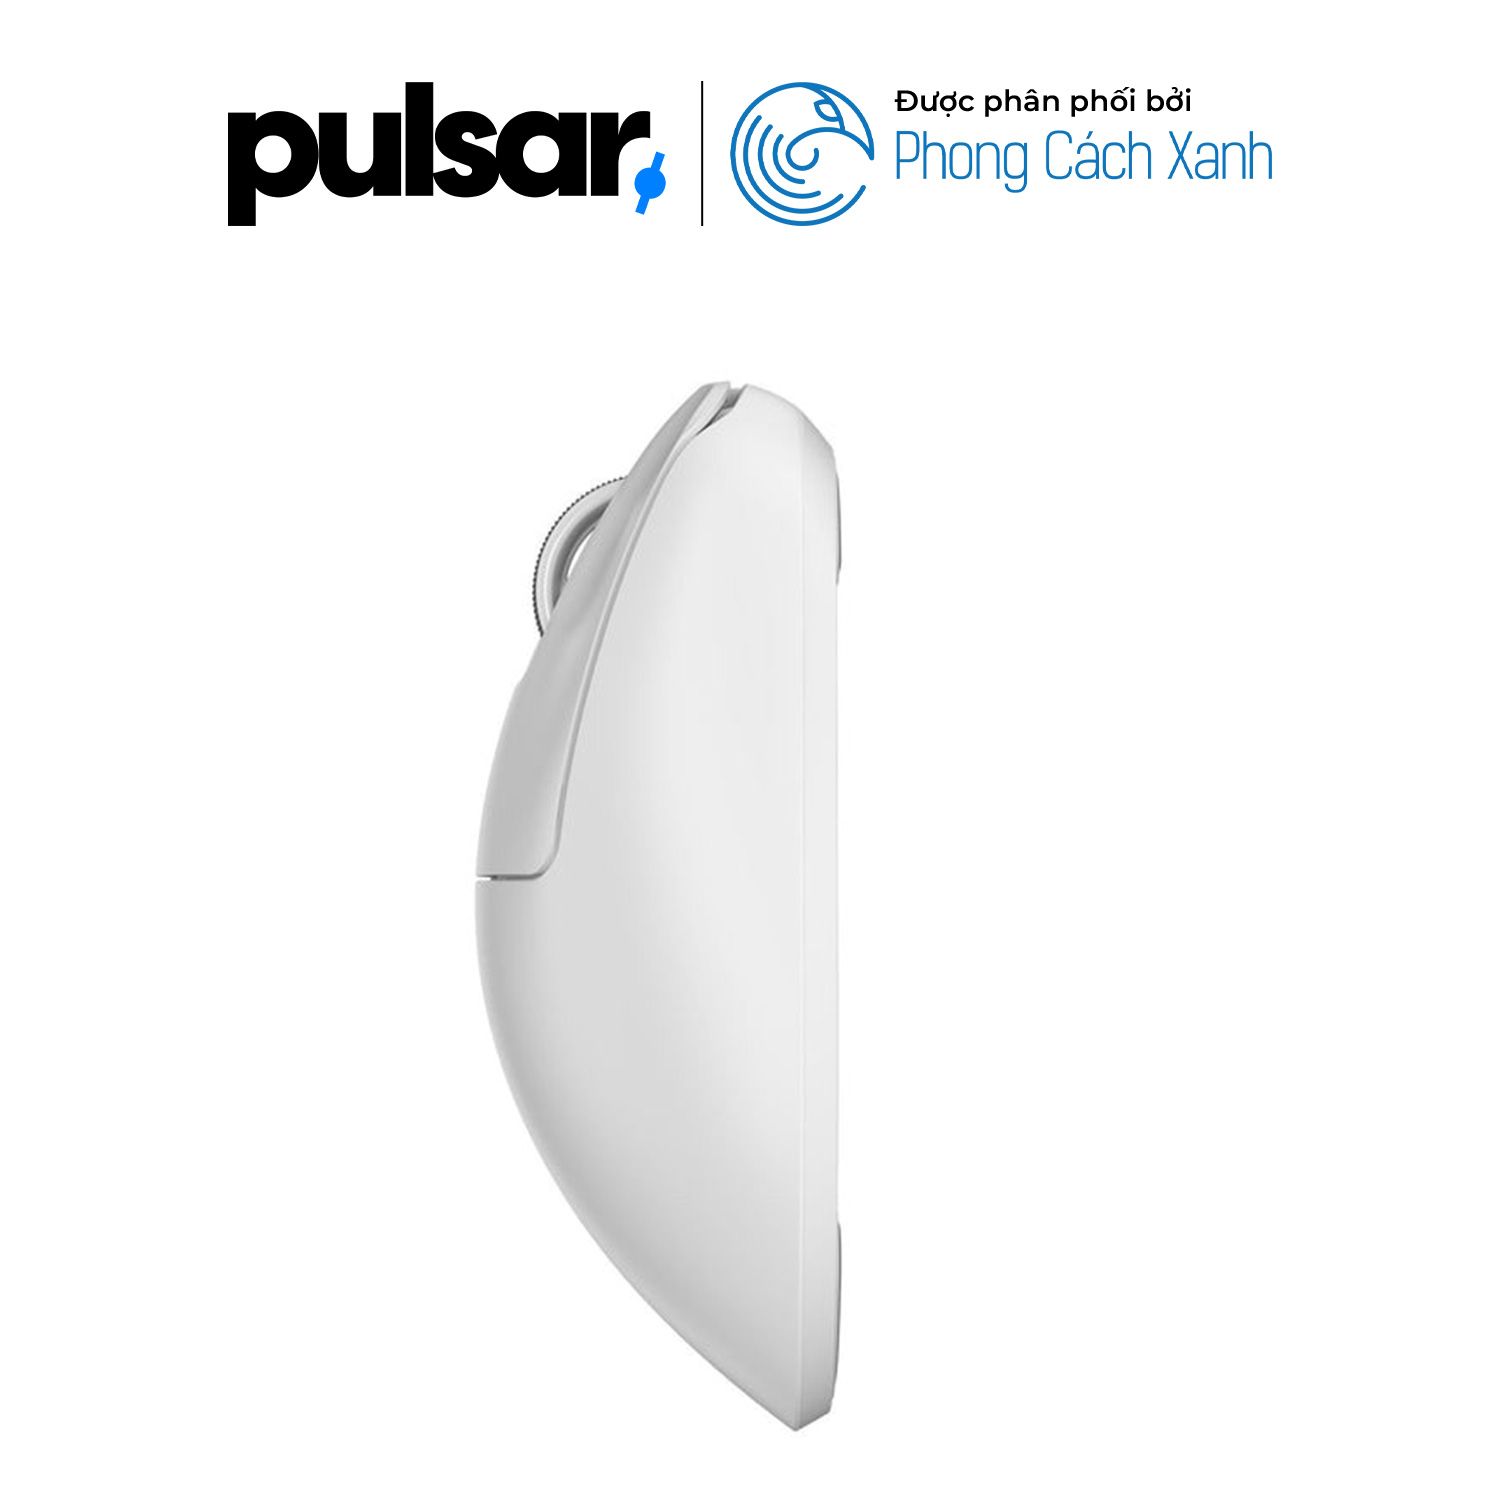 Chuột không dây siêu nhẹ Pulsar Xlite V3 (Hỗ trợ 4K Polling Rate) - Hàng Chính Hãng